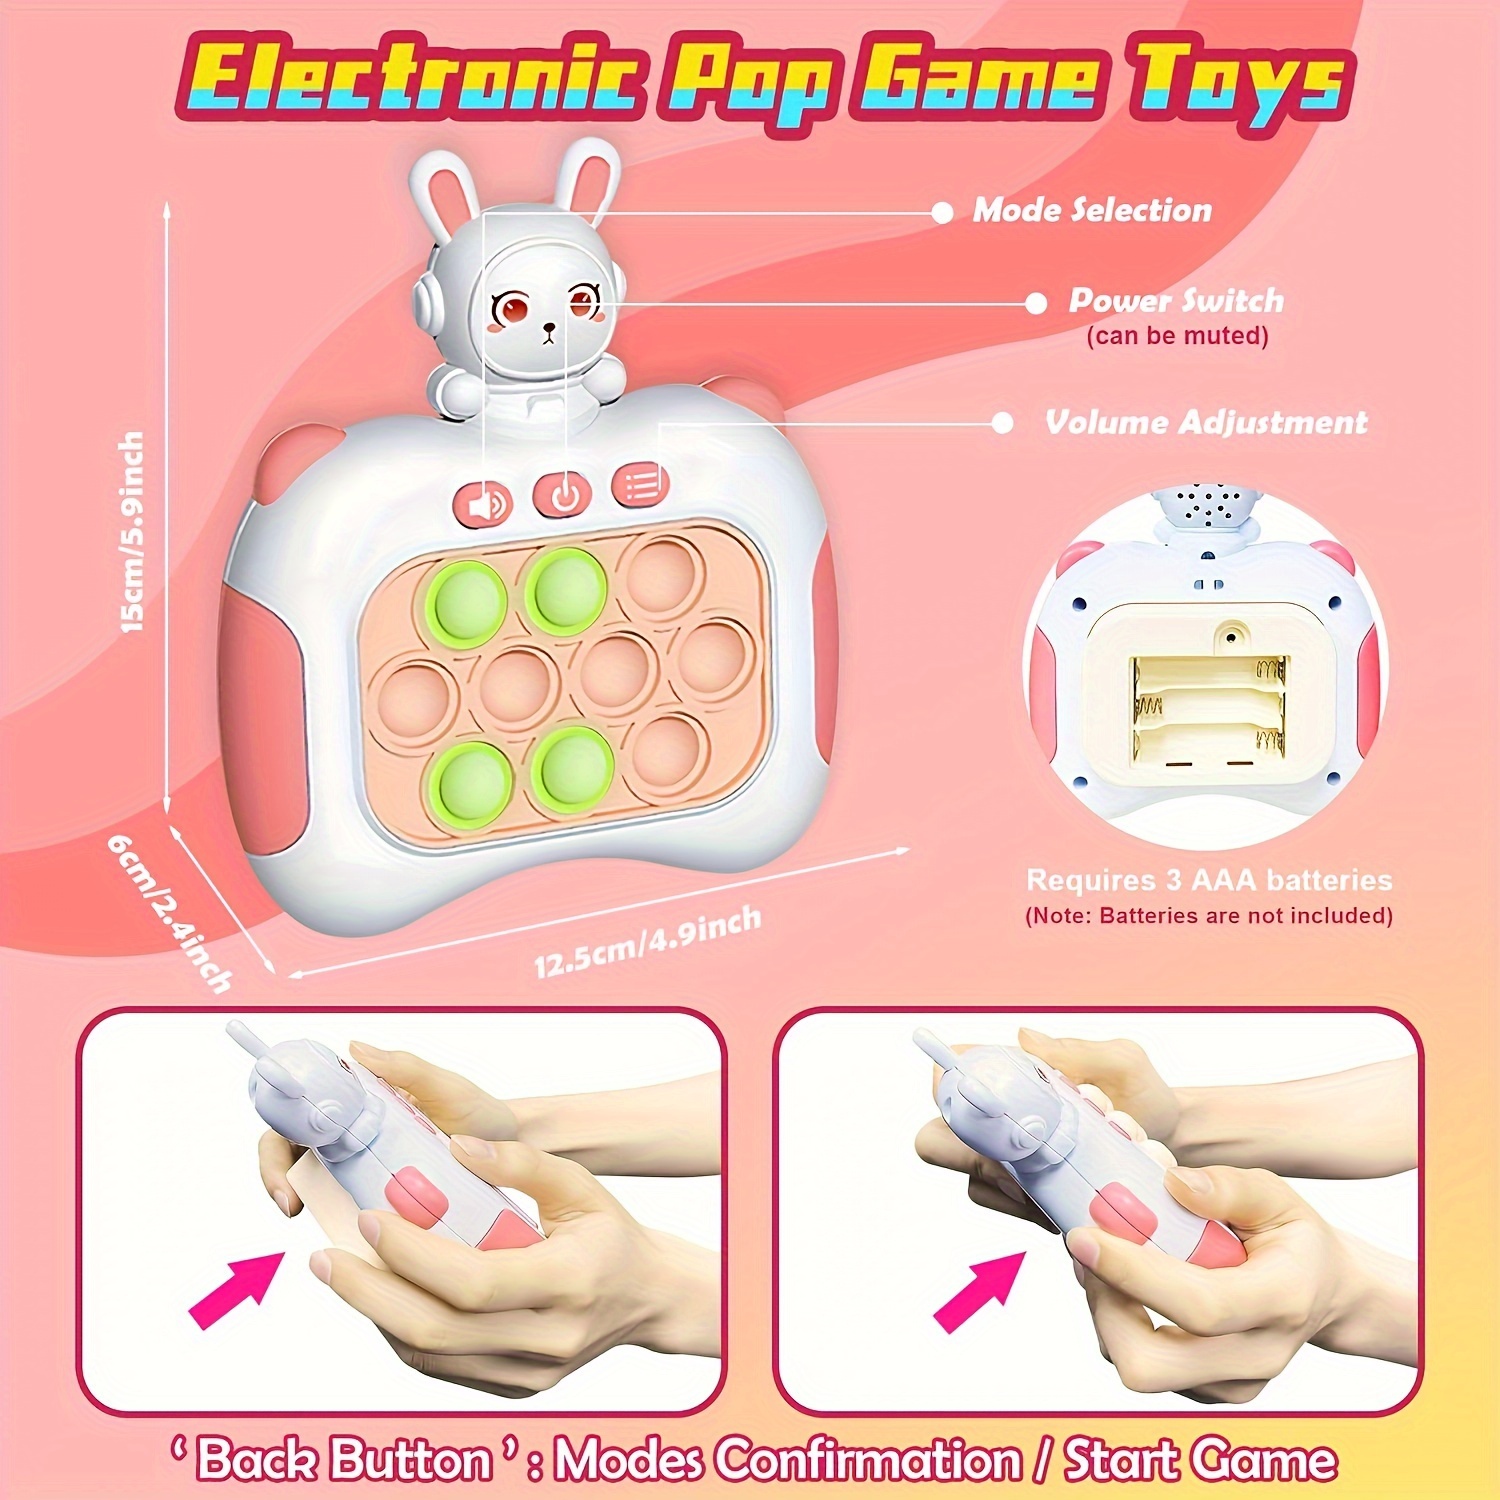  Pop GameToys para niños de 6 a 12 años, juguetes